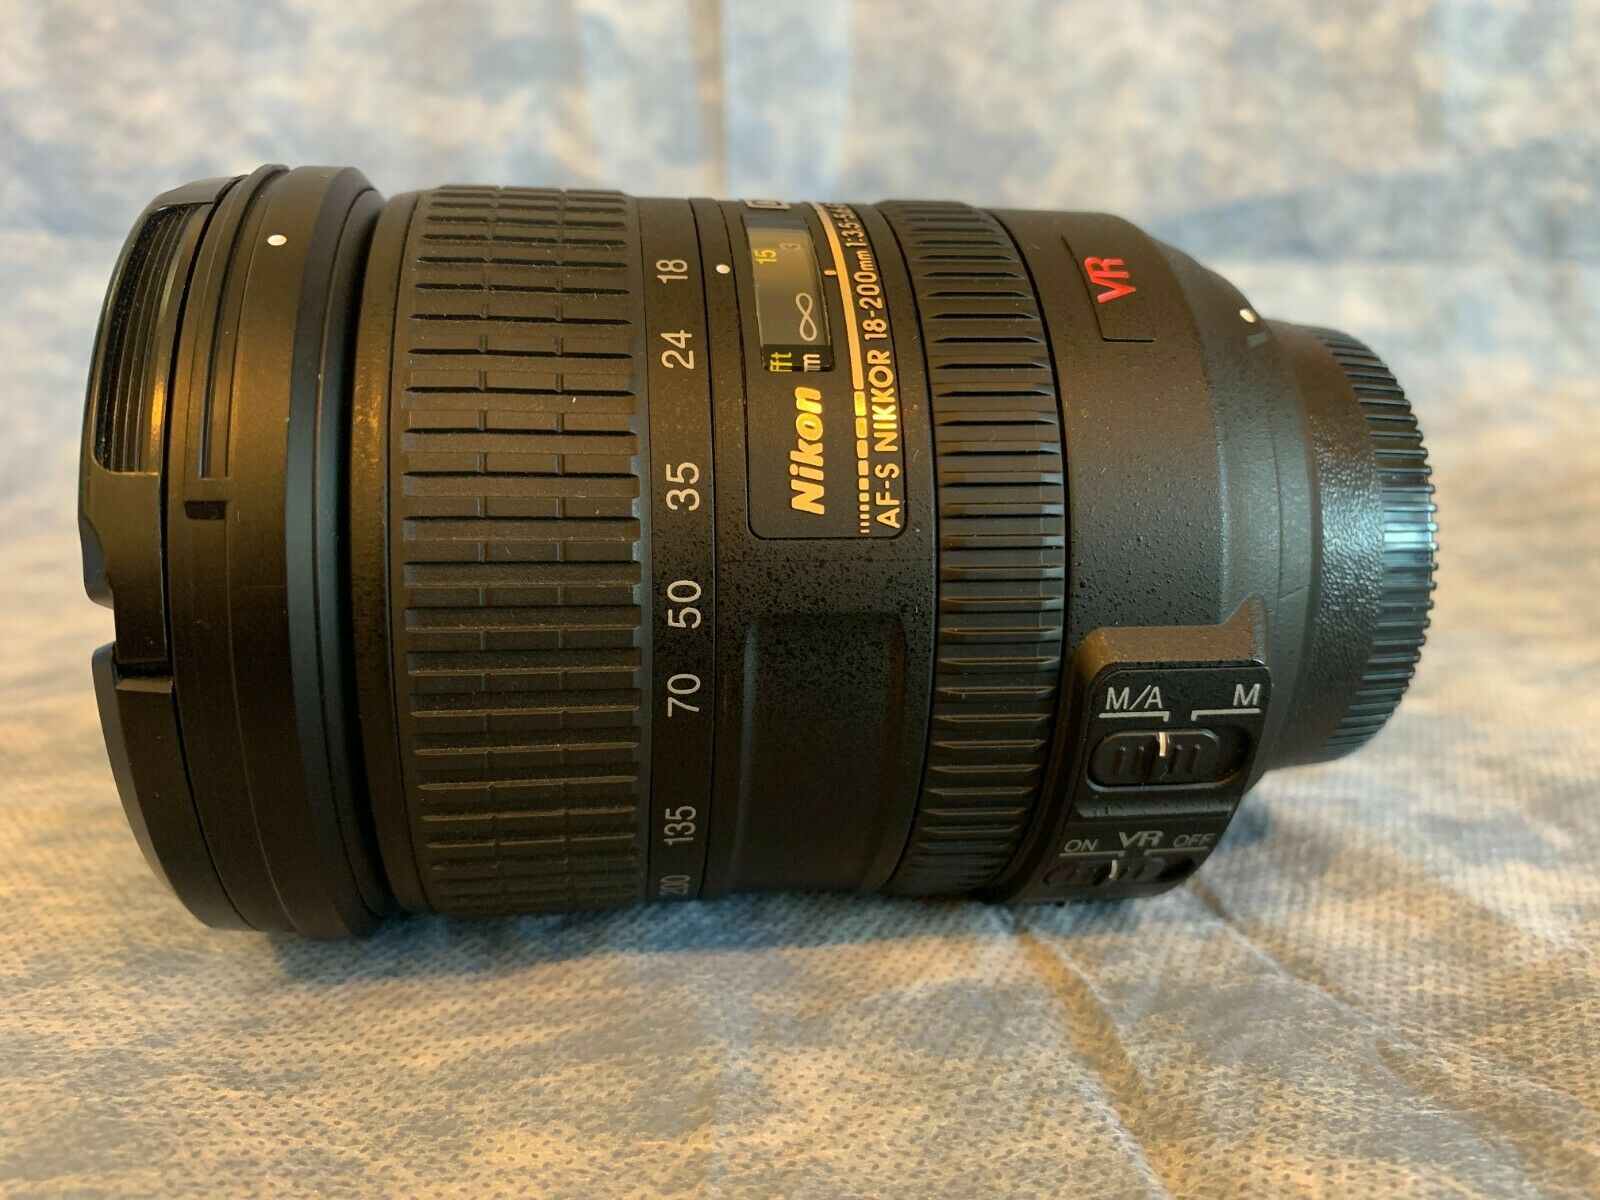 Ống kính Nikon 18-200mm F/3.5-5.6 ED VR AF-S Vr DX IF Zoom Lens, đẹp 95%